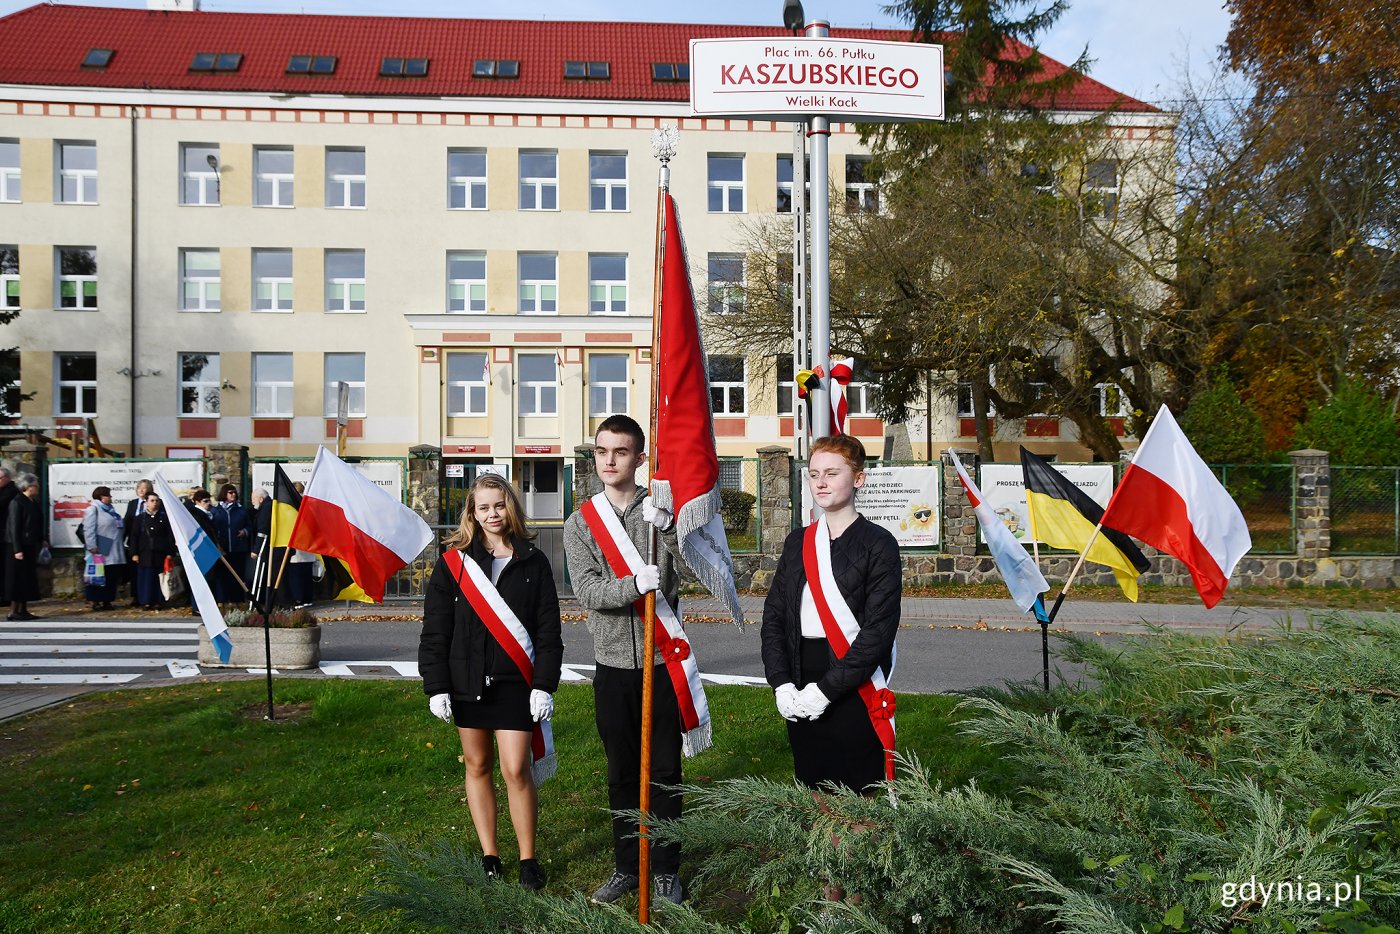 Placowi przy ul. Starodworcowej na Wielkim Kacku nadano imię 66. Kaszubskiego Pułku Piechoty // fot. Michał Puszczewicz 